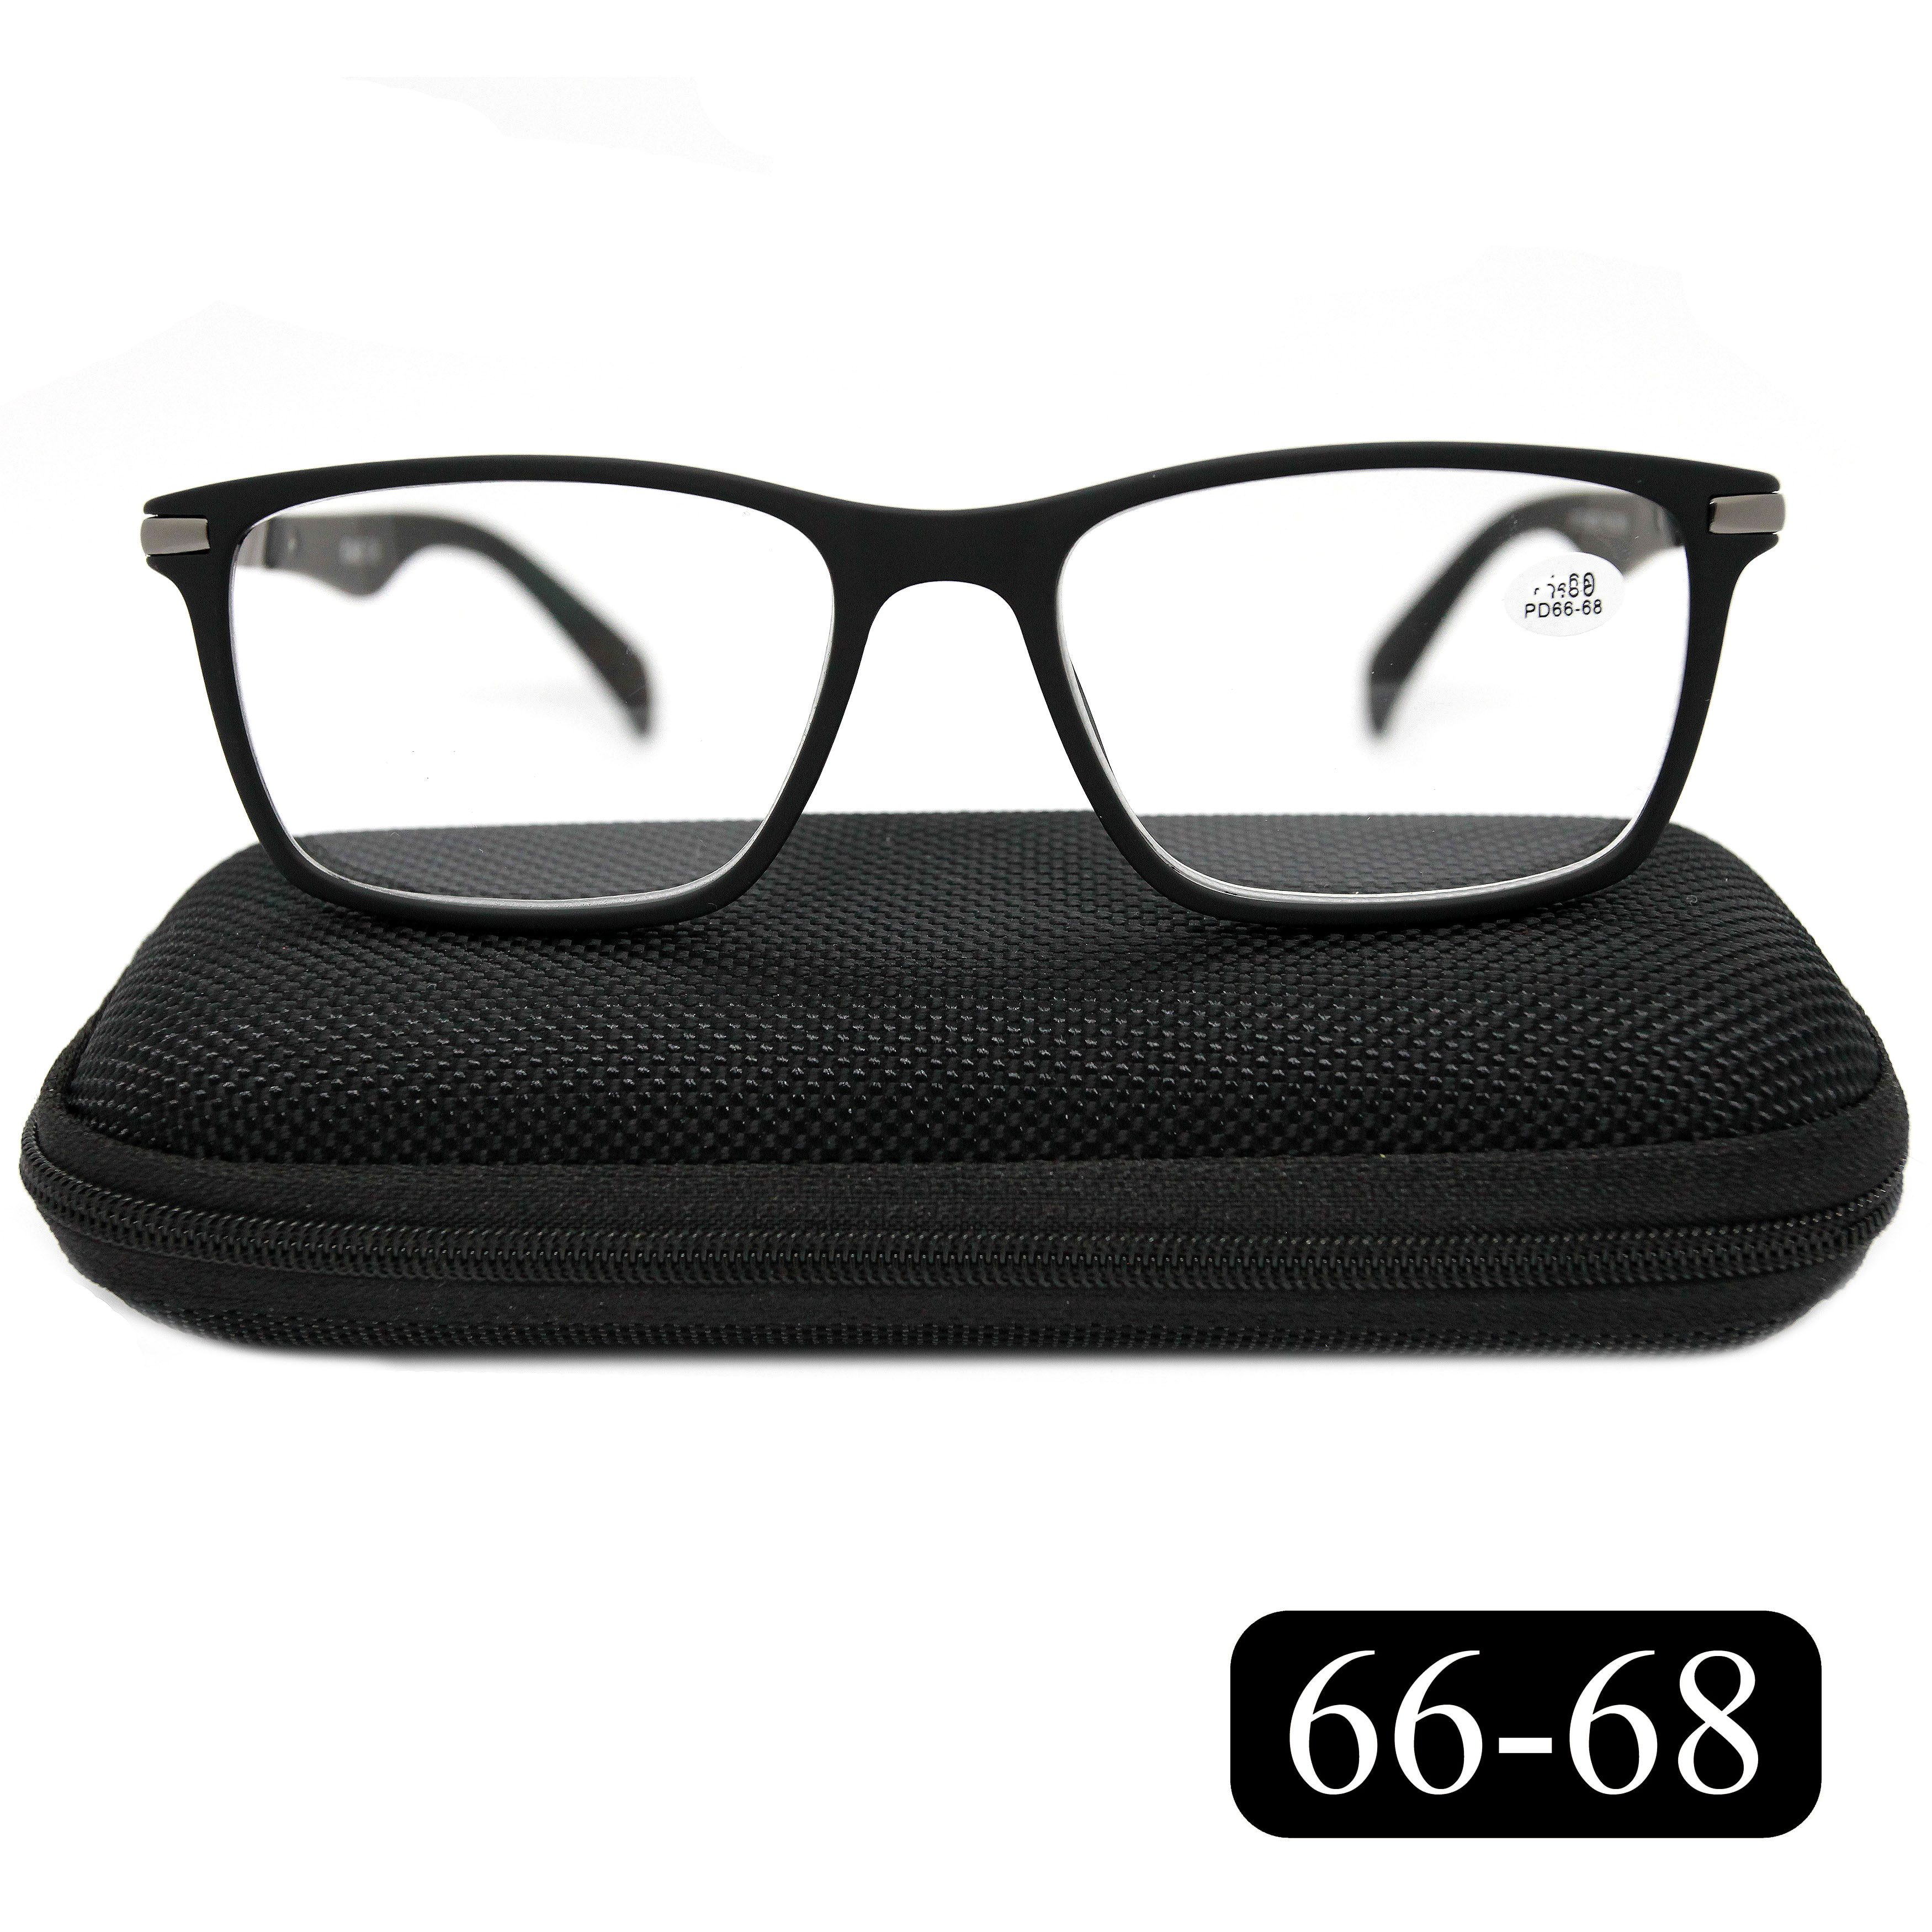 Готовые очки EAE 2177 +7.00, c футляром, цвет черный, РЦ 66-68